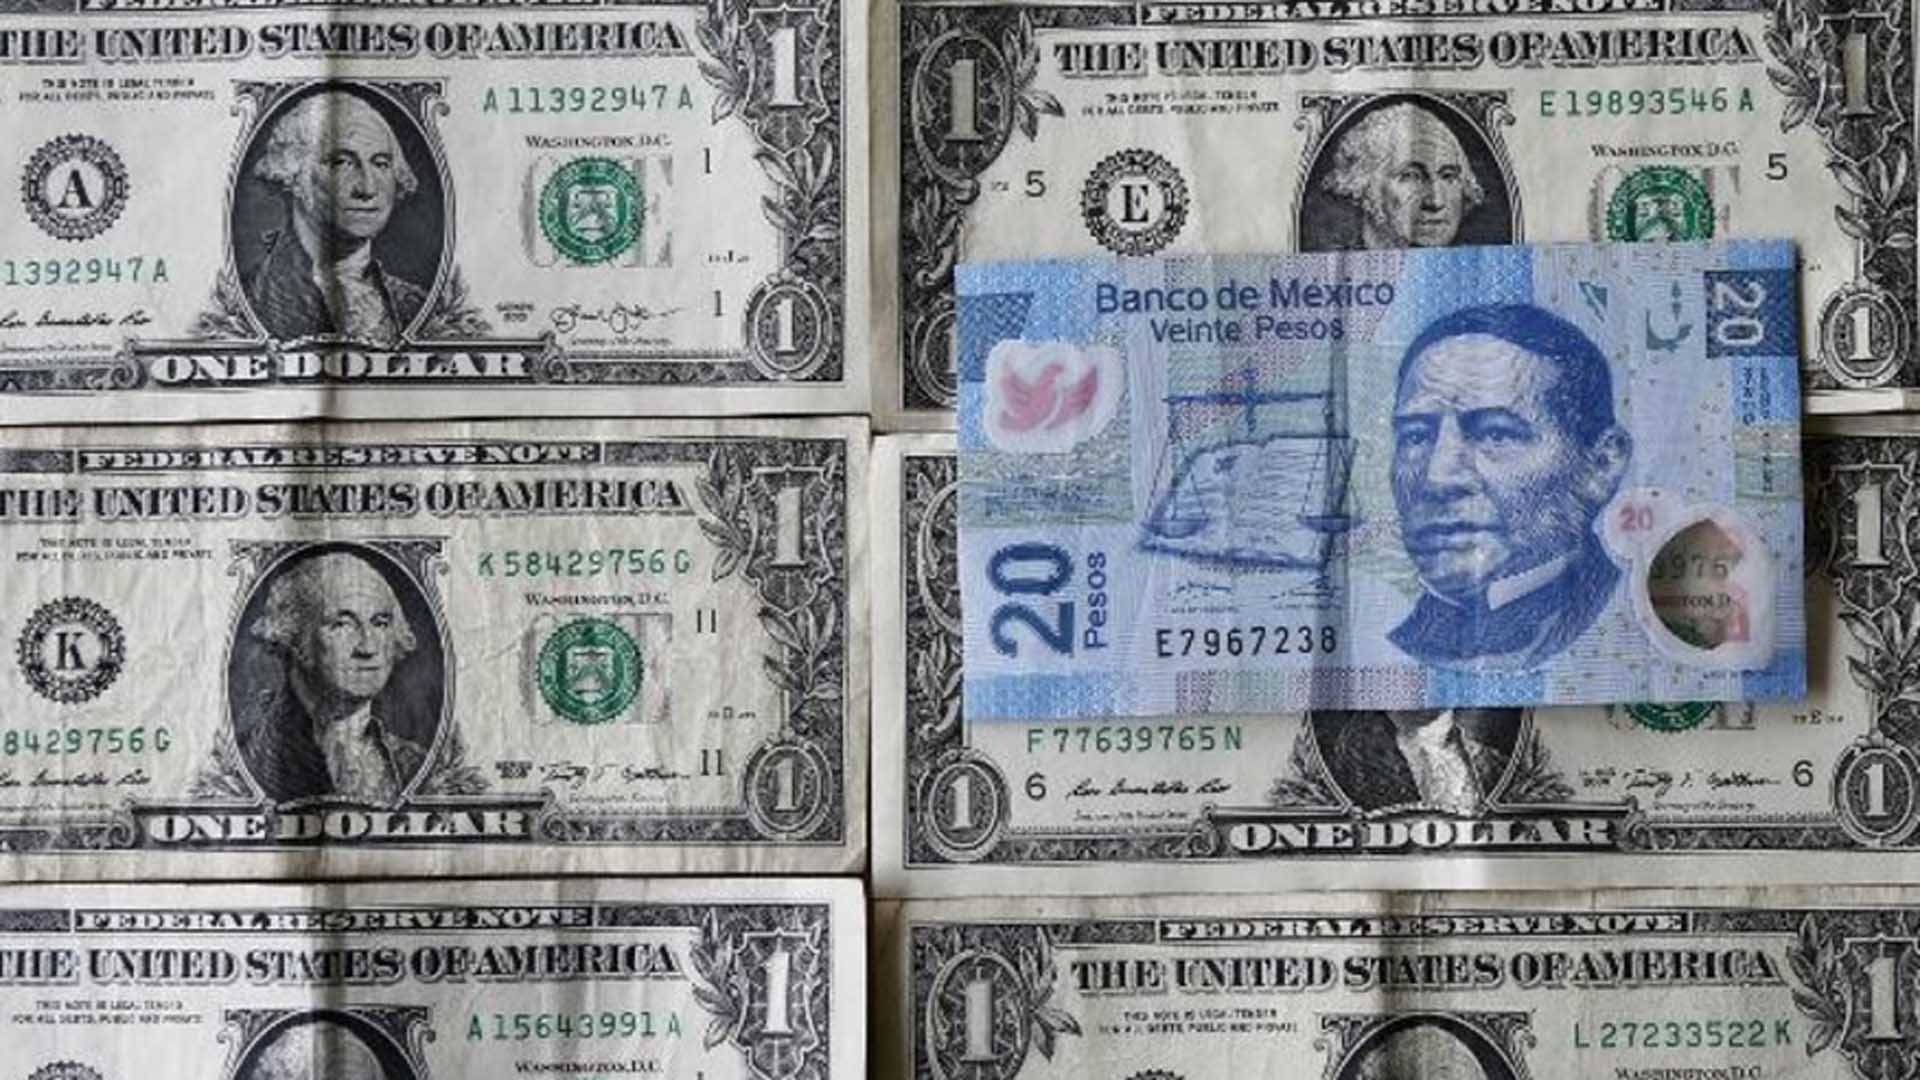  El dólar, ¿Una vez más hacia los 19 pesos?